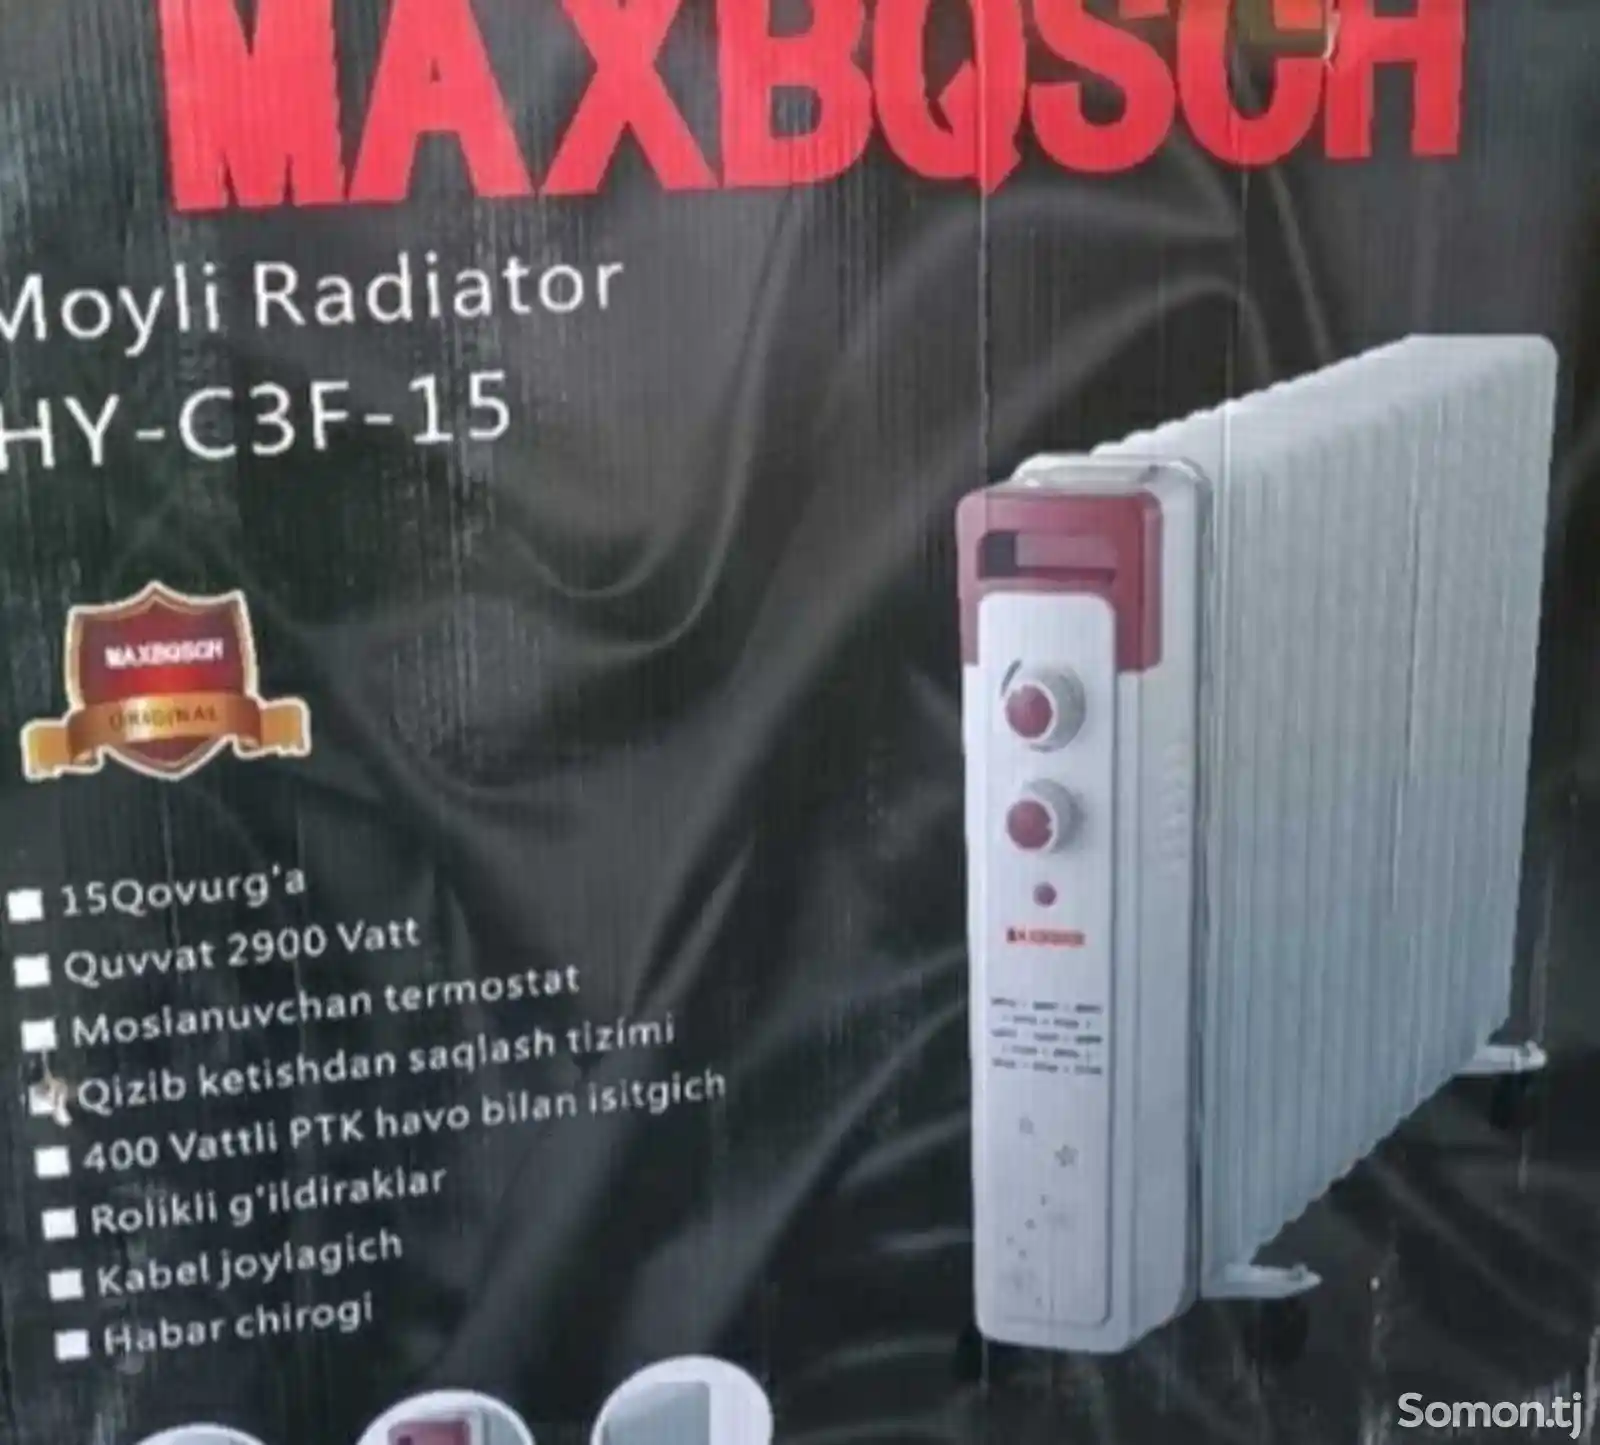 Масляный радиатор Maxbosch HY-C3F-15